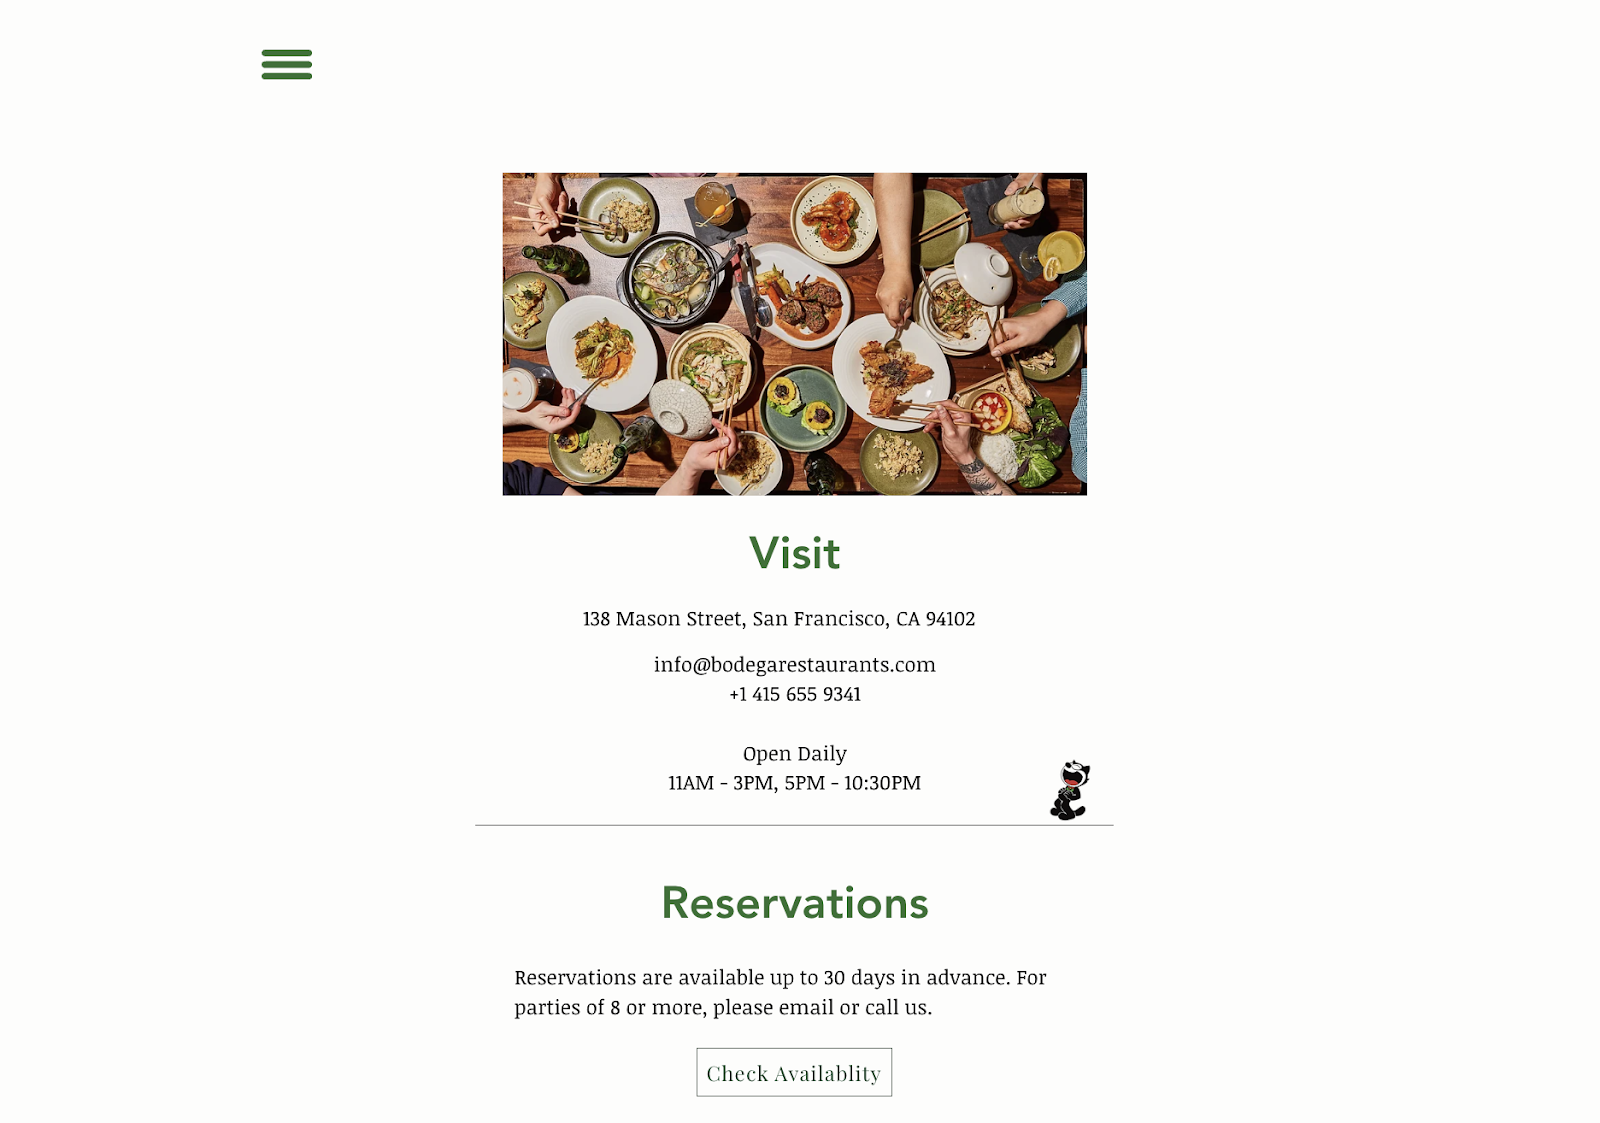 Ravintolamarkkinointiideoita: Yksinkertainen verkkosivusto ravintola Bodegalle San Franciscossa. Verkkosivulla on yhteystiedot, aukioloajat ja varauslinkki.